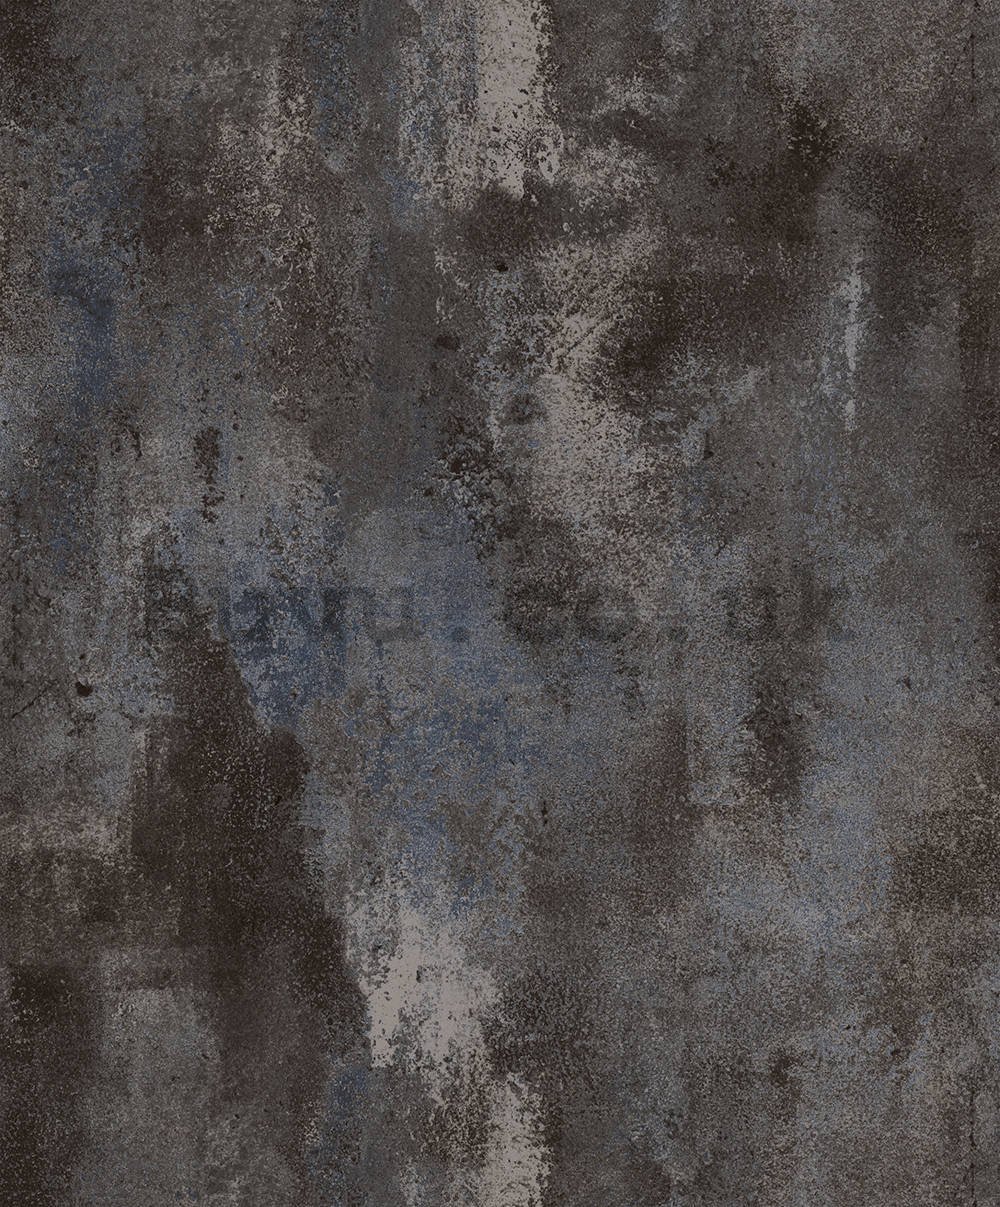 Vinyl wallpaper plaster gray, white